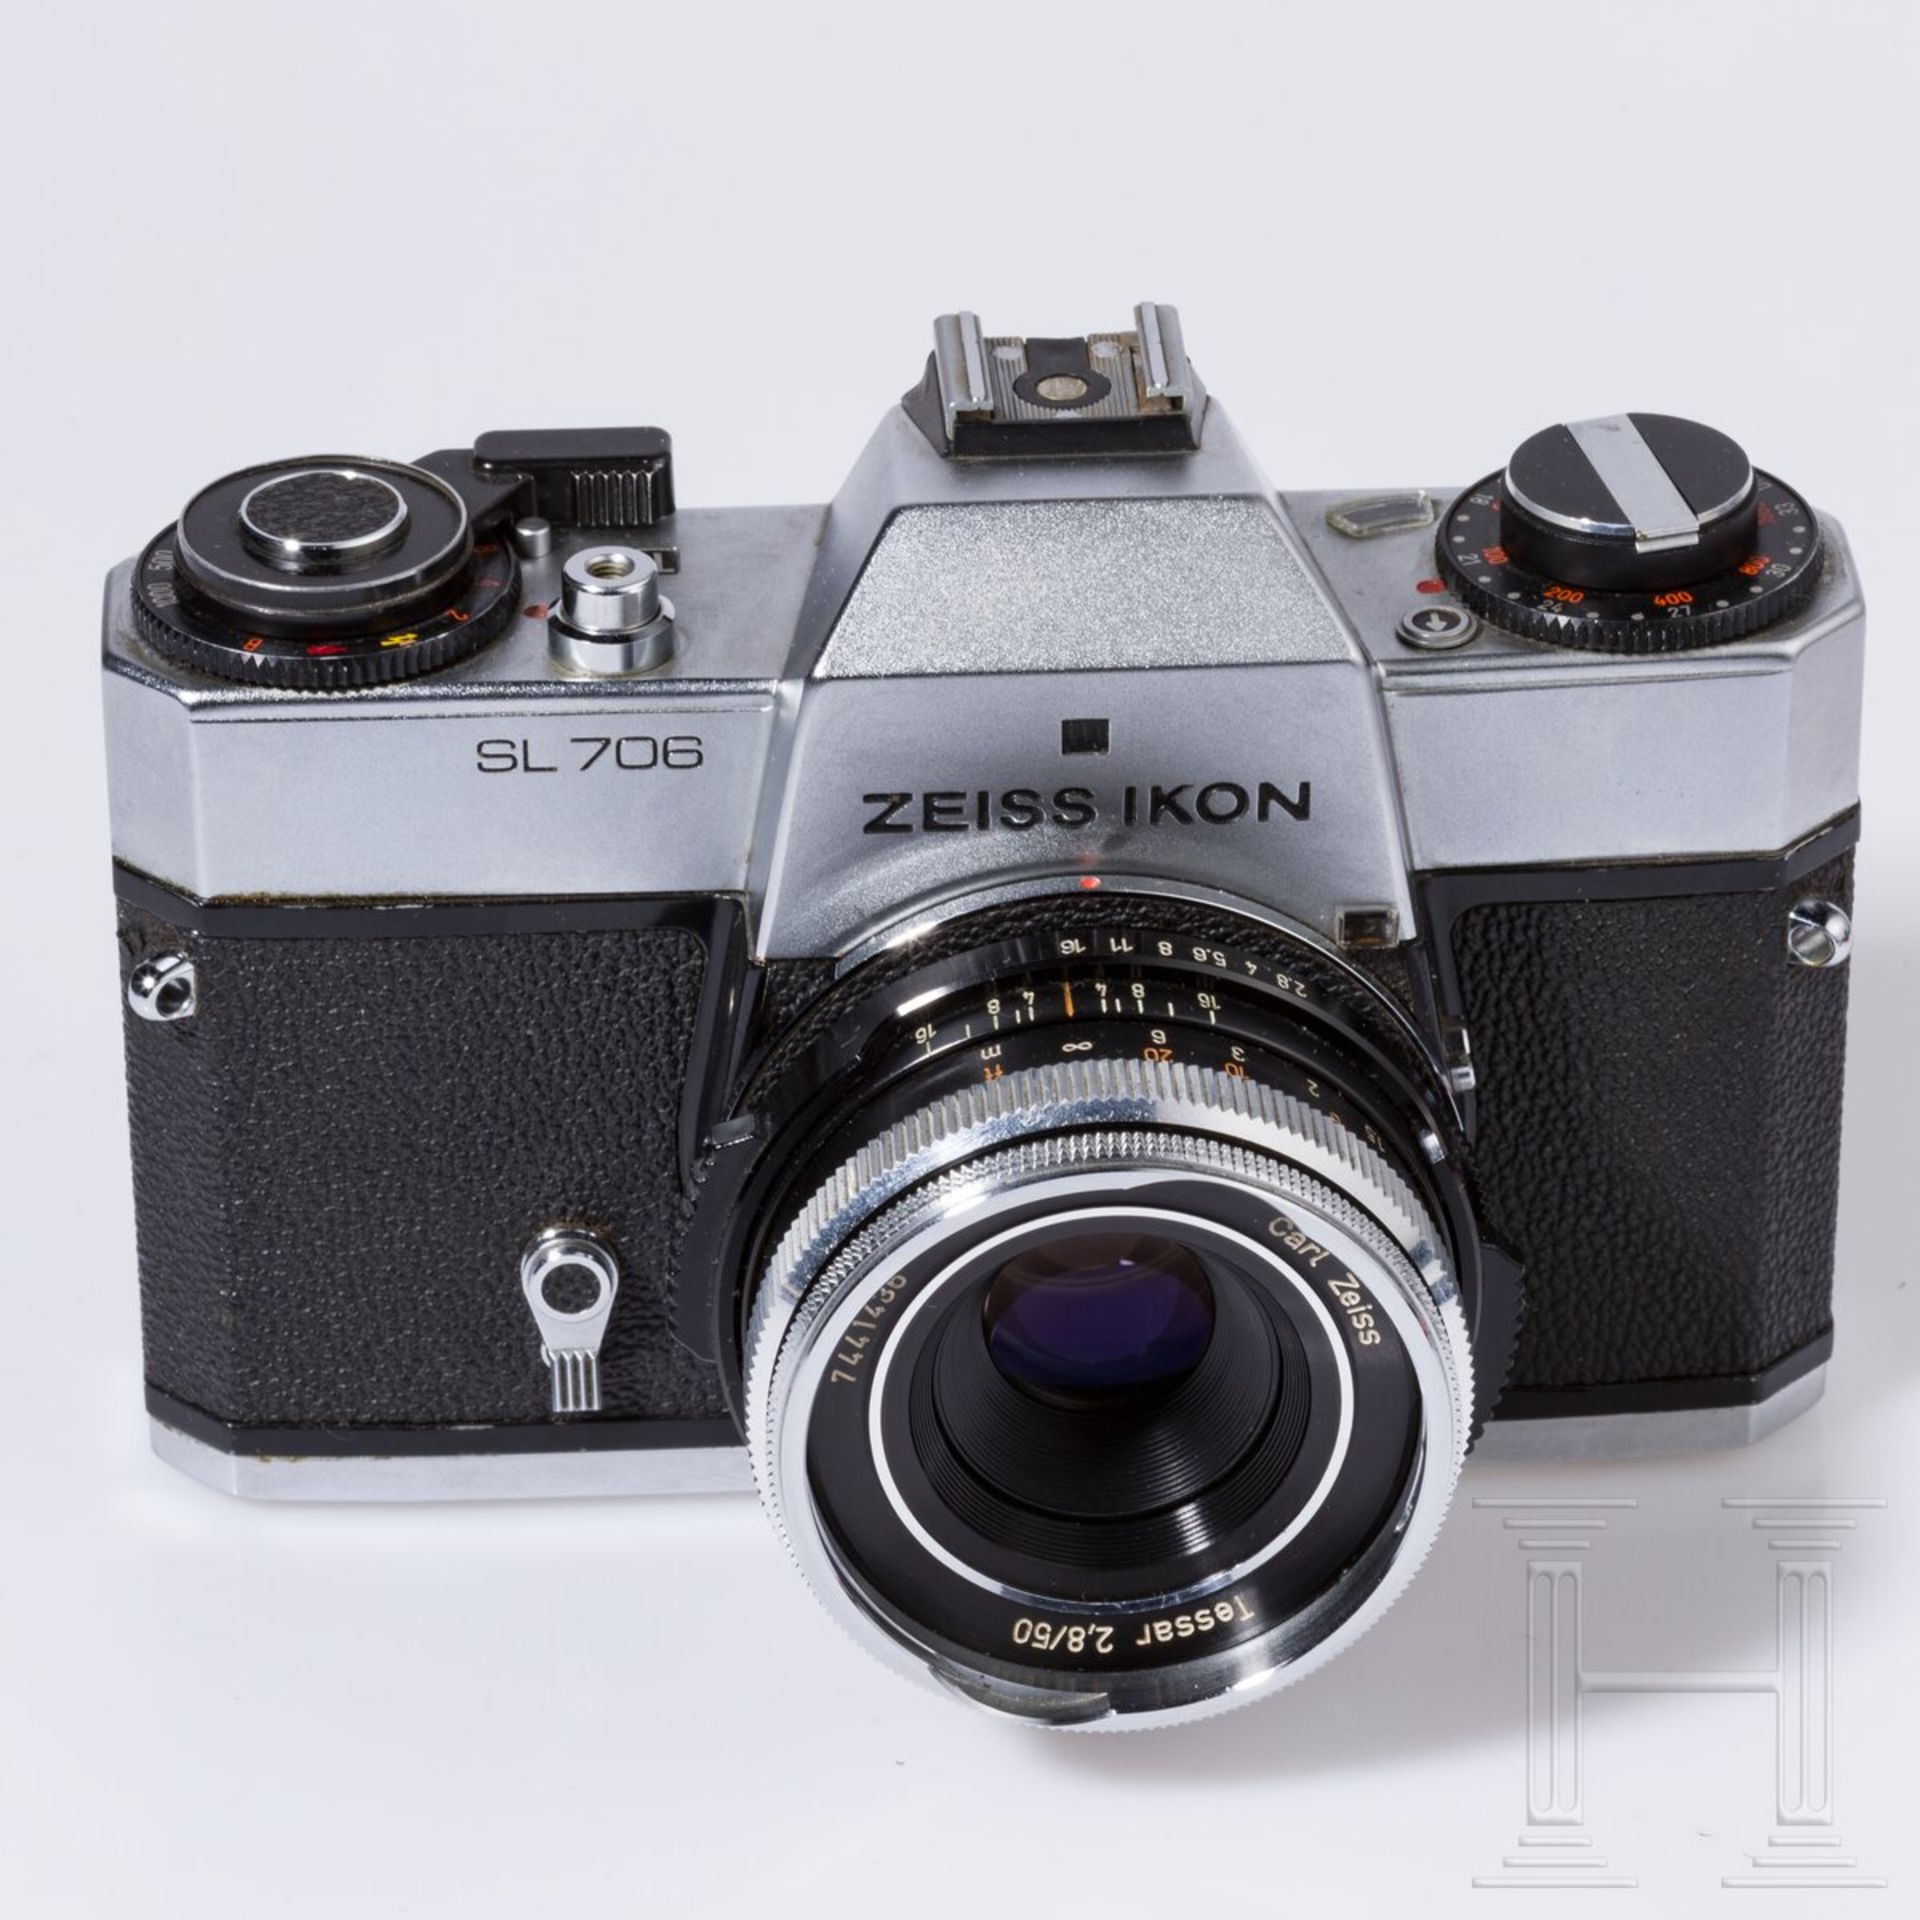 Zeiss Ikon SL 706 mit Carl Zeiss Tessar 50 mm, Skoparex 35 mm, Super-Dynarex 135 mm - Bild 2 aus 11